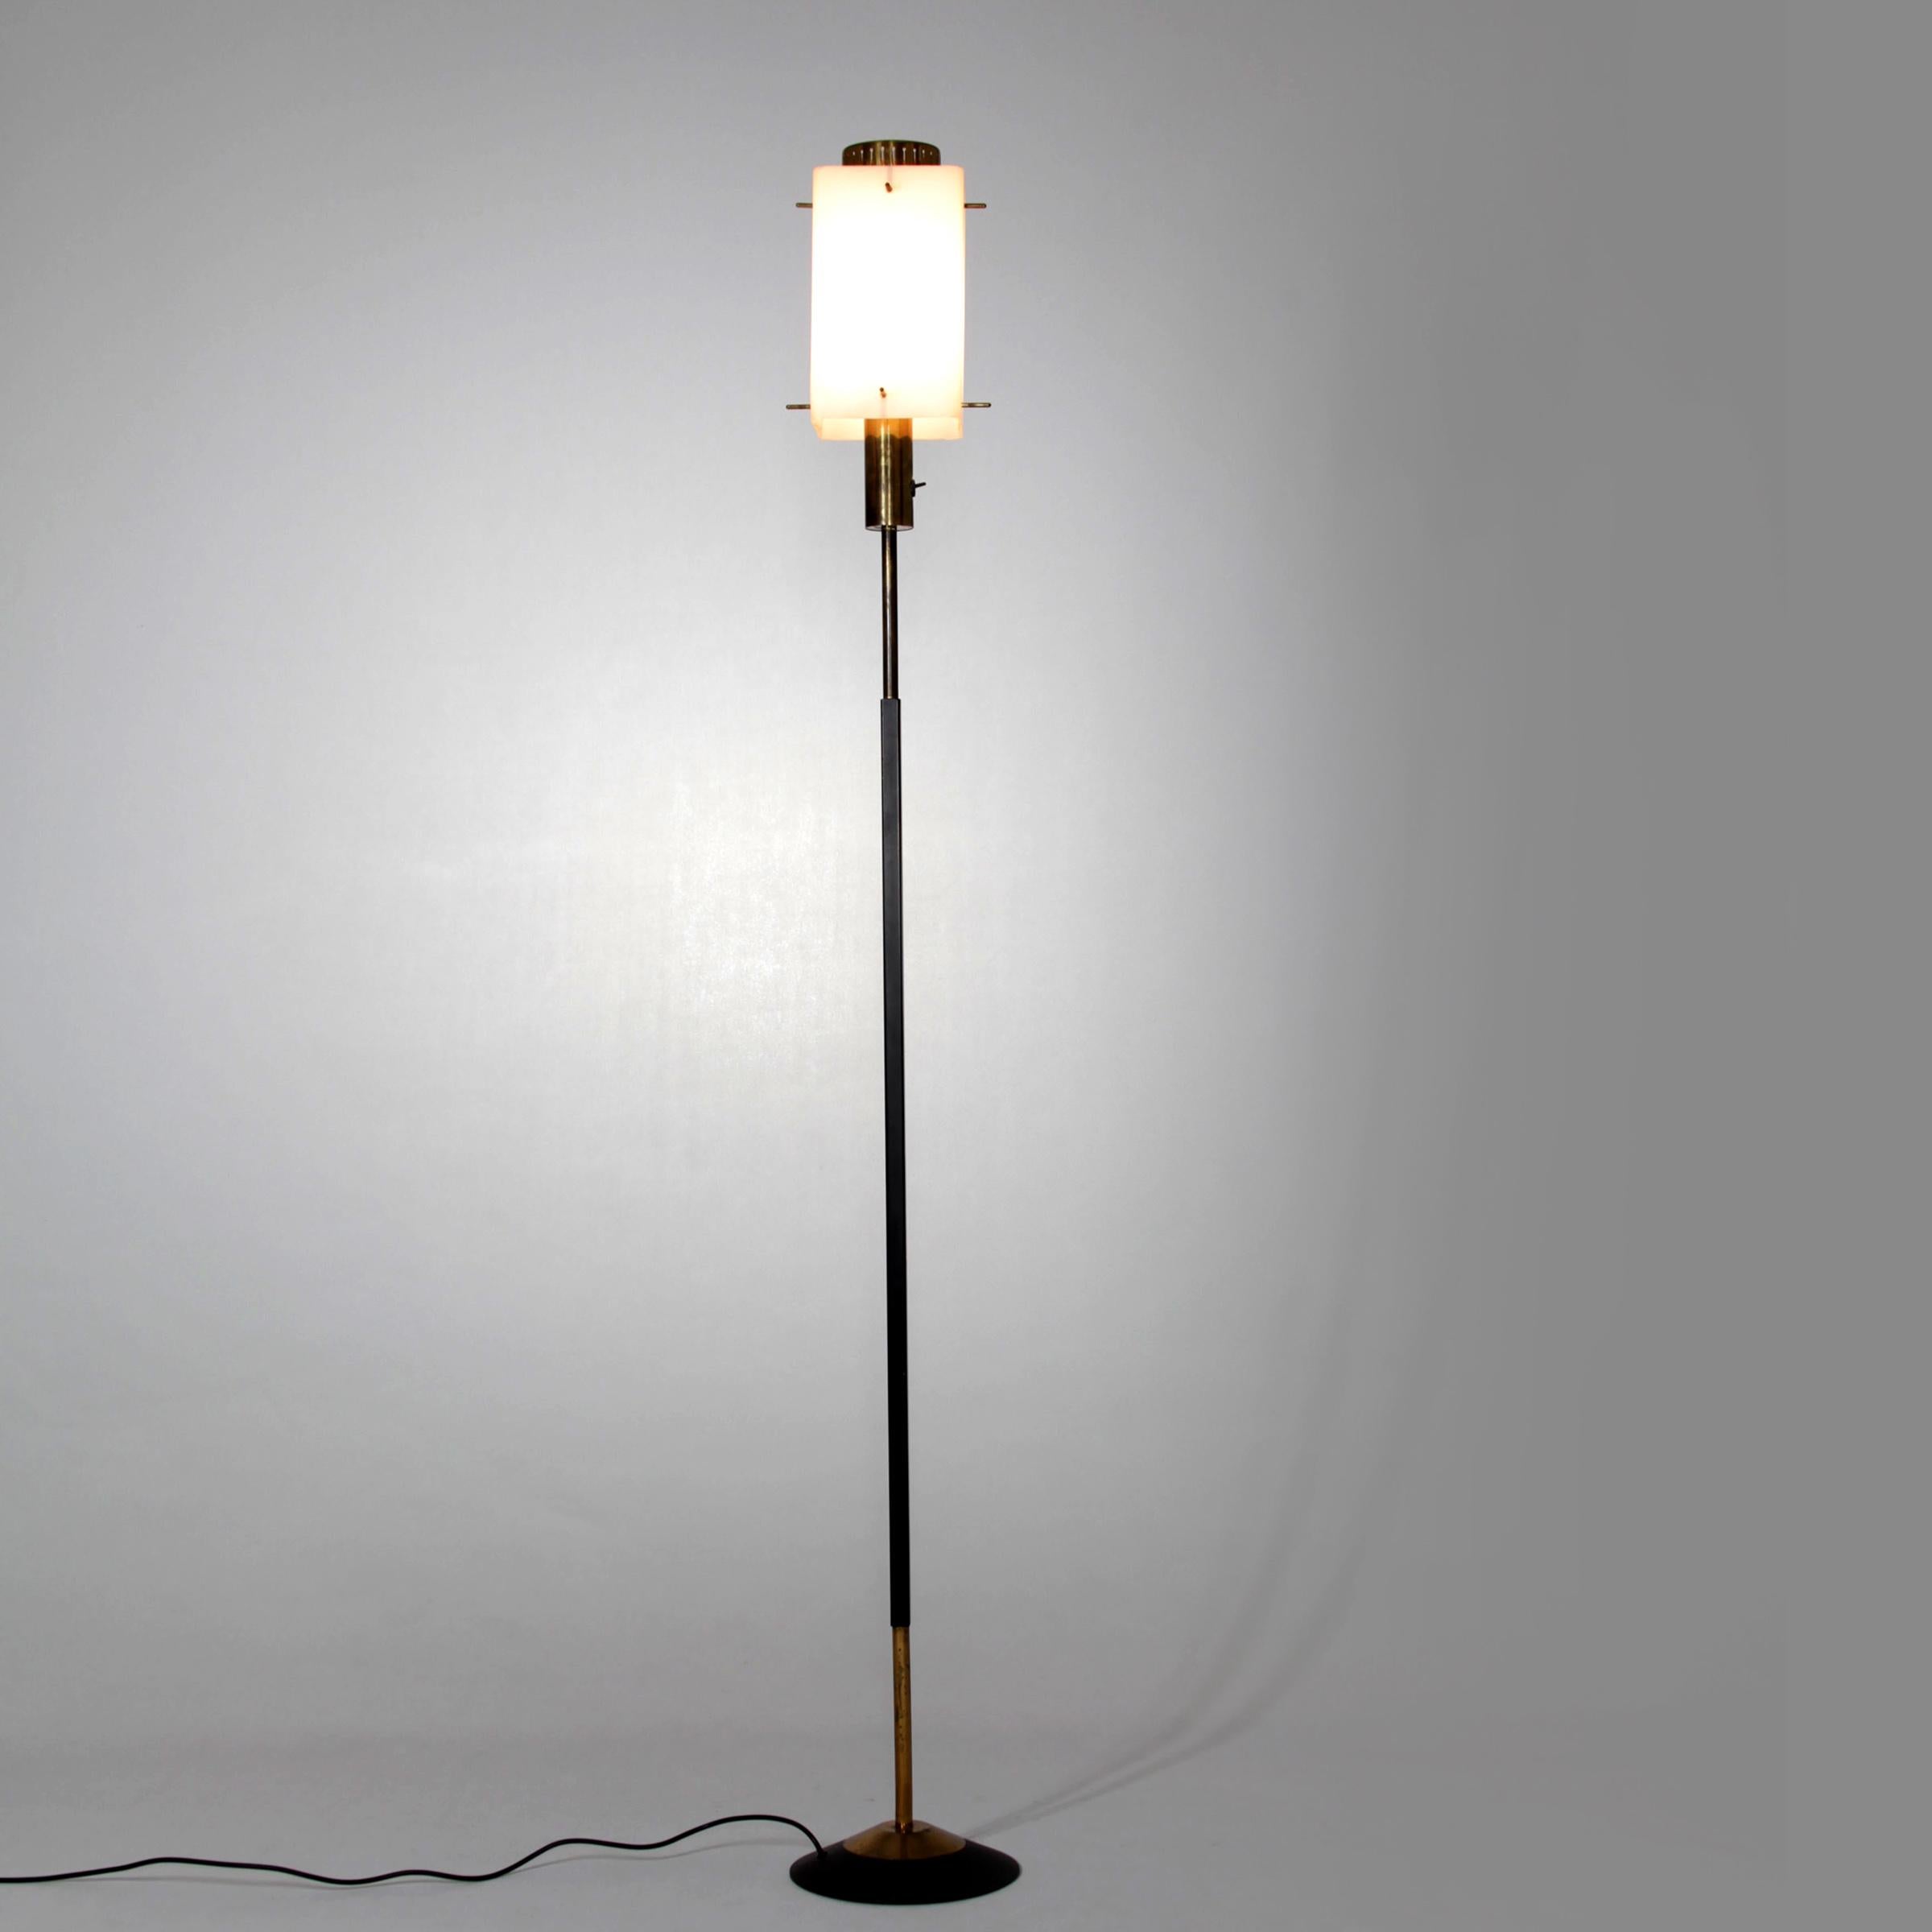 Seltene italienische Stilnovo-Stehlampe aus den 1950er Jahren. Die Leuchte zeichnet sich durch einen Opalglasschirm, einen lackierten Rahmen und Messingelemente aus.
Schirm 15 x 15x 25 cm